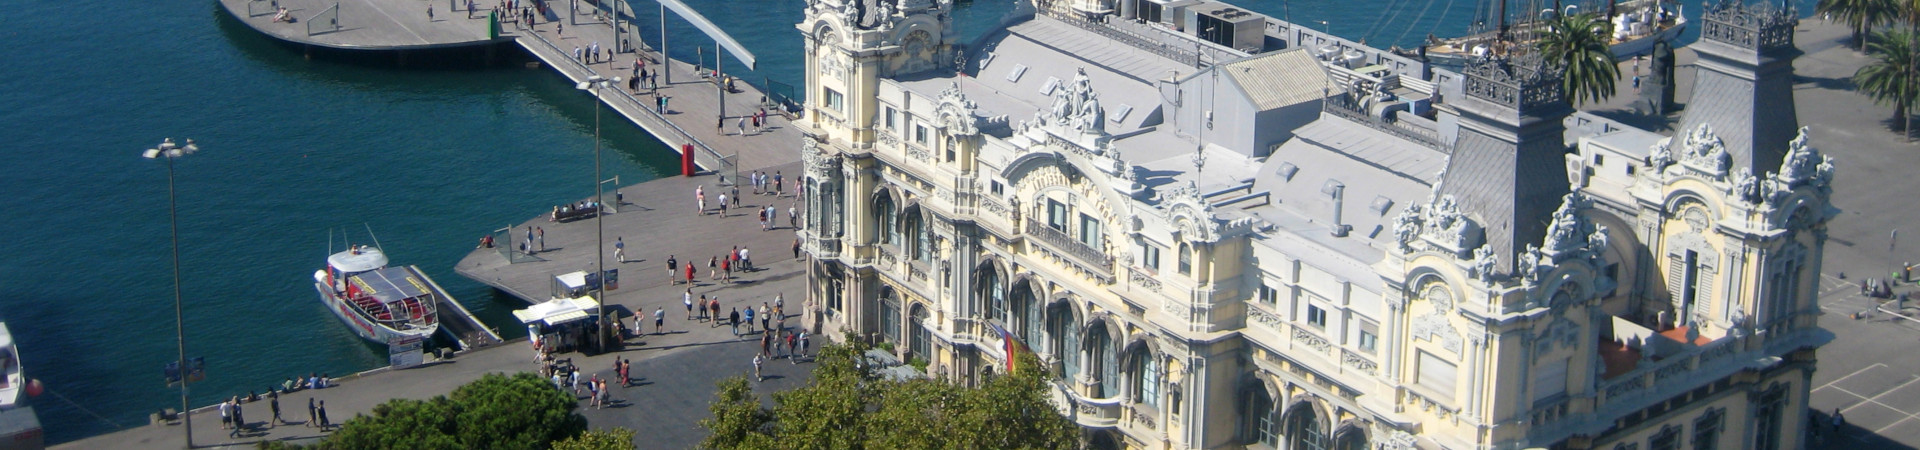 Imagen recurso del puerto de destino Barcelona para la ruta en ferry Savona - Barcelona